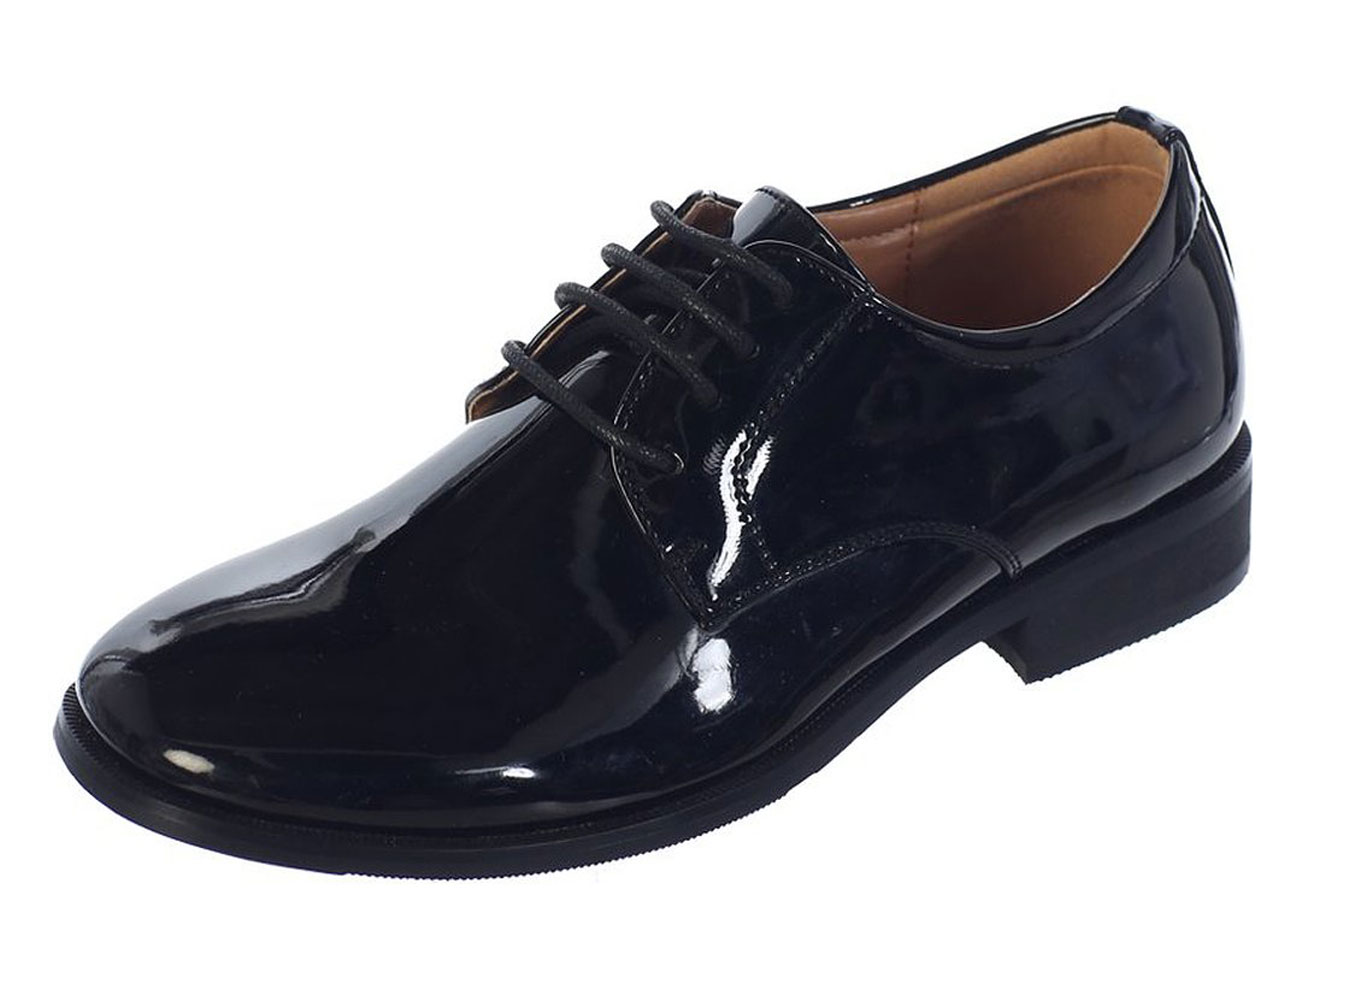 Avery Hill Boys Shiny or Shiny Patent Leather Shoes Bk Shiny Bigkid 4Y